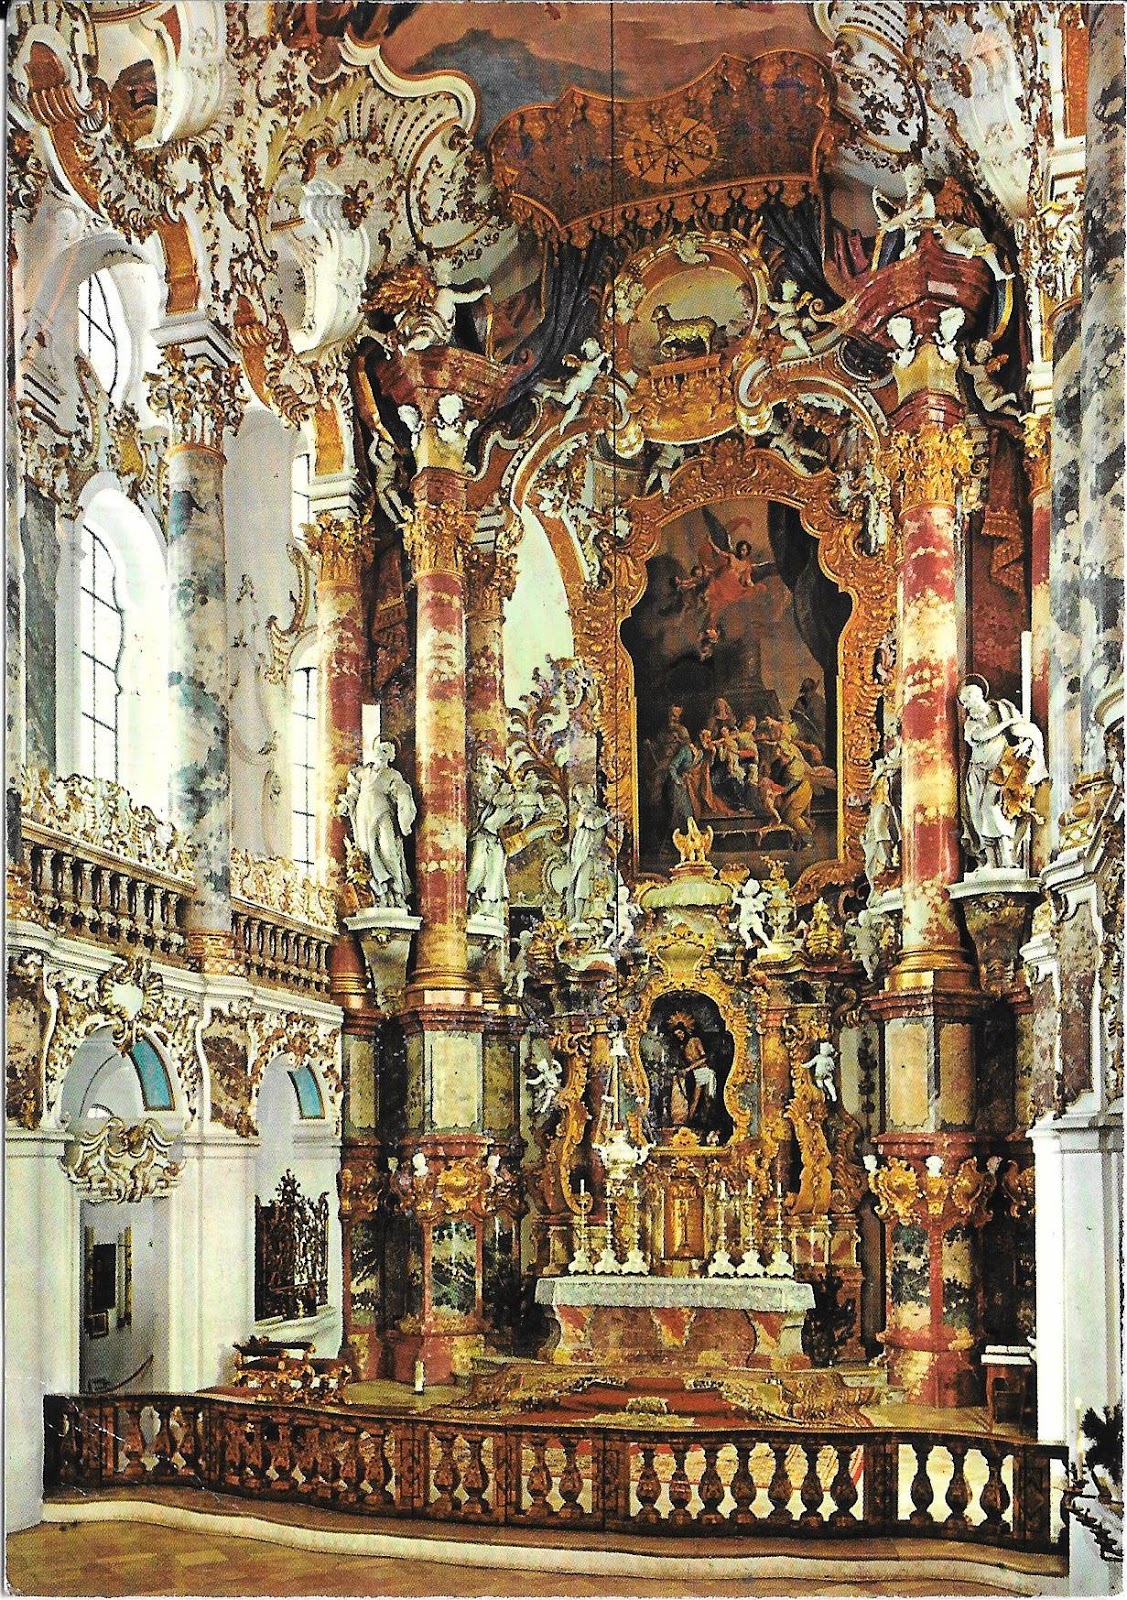 Mi Colección de Tarjetas Postales: Iglesia de Wies (Alemania) - Estados  Unidos